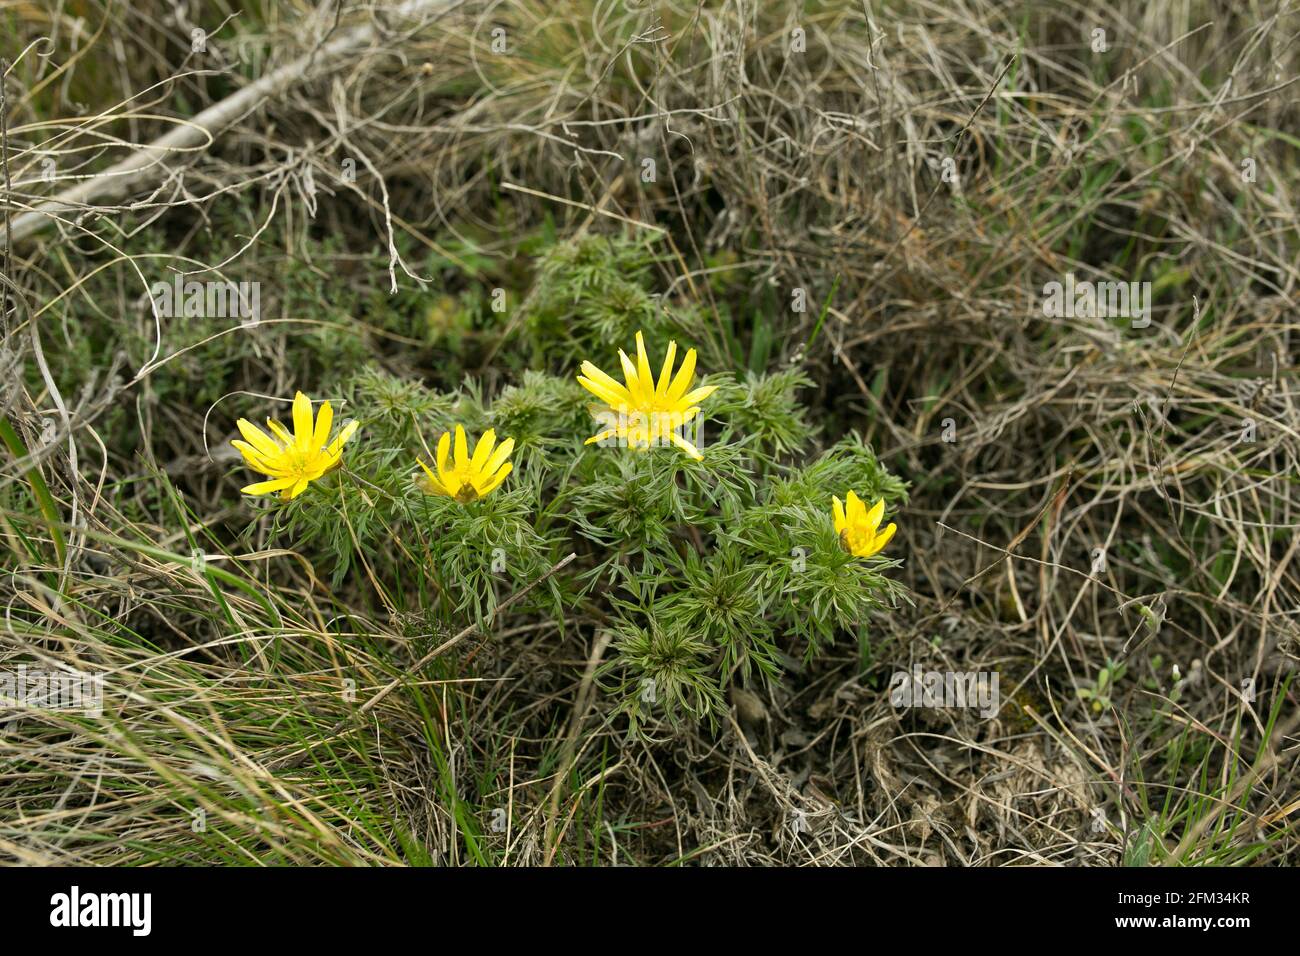 Primavera adonis fiore nei campi e colline, Ucraina. L'occhio del fagiano cresce nel pascolo delle pecore all'inizio della primavera. Grandi fiori gialli. Foto Stock